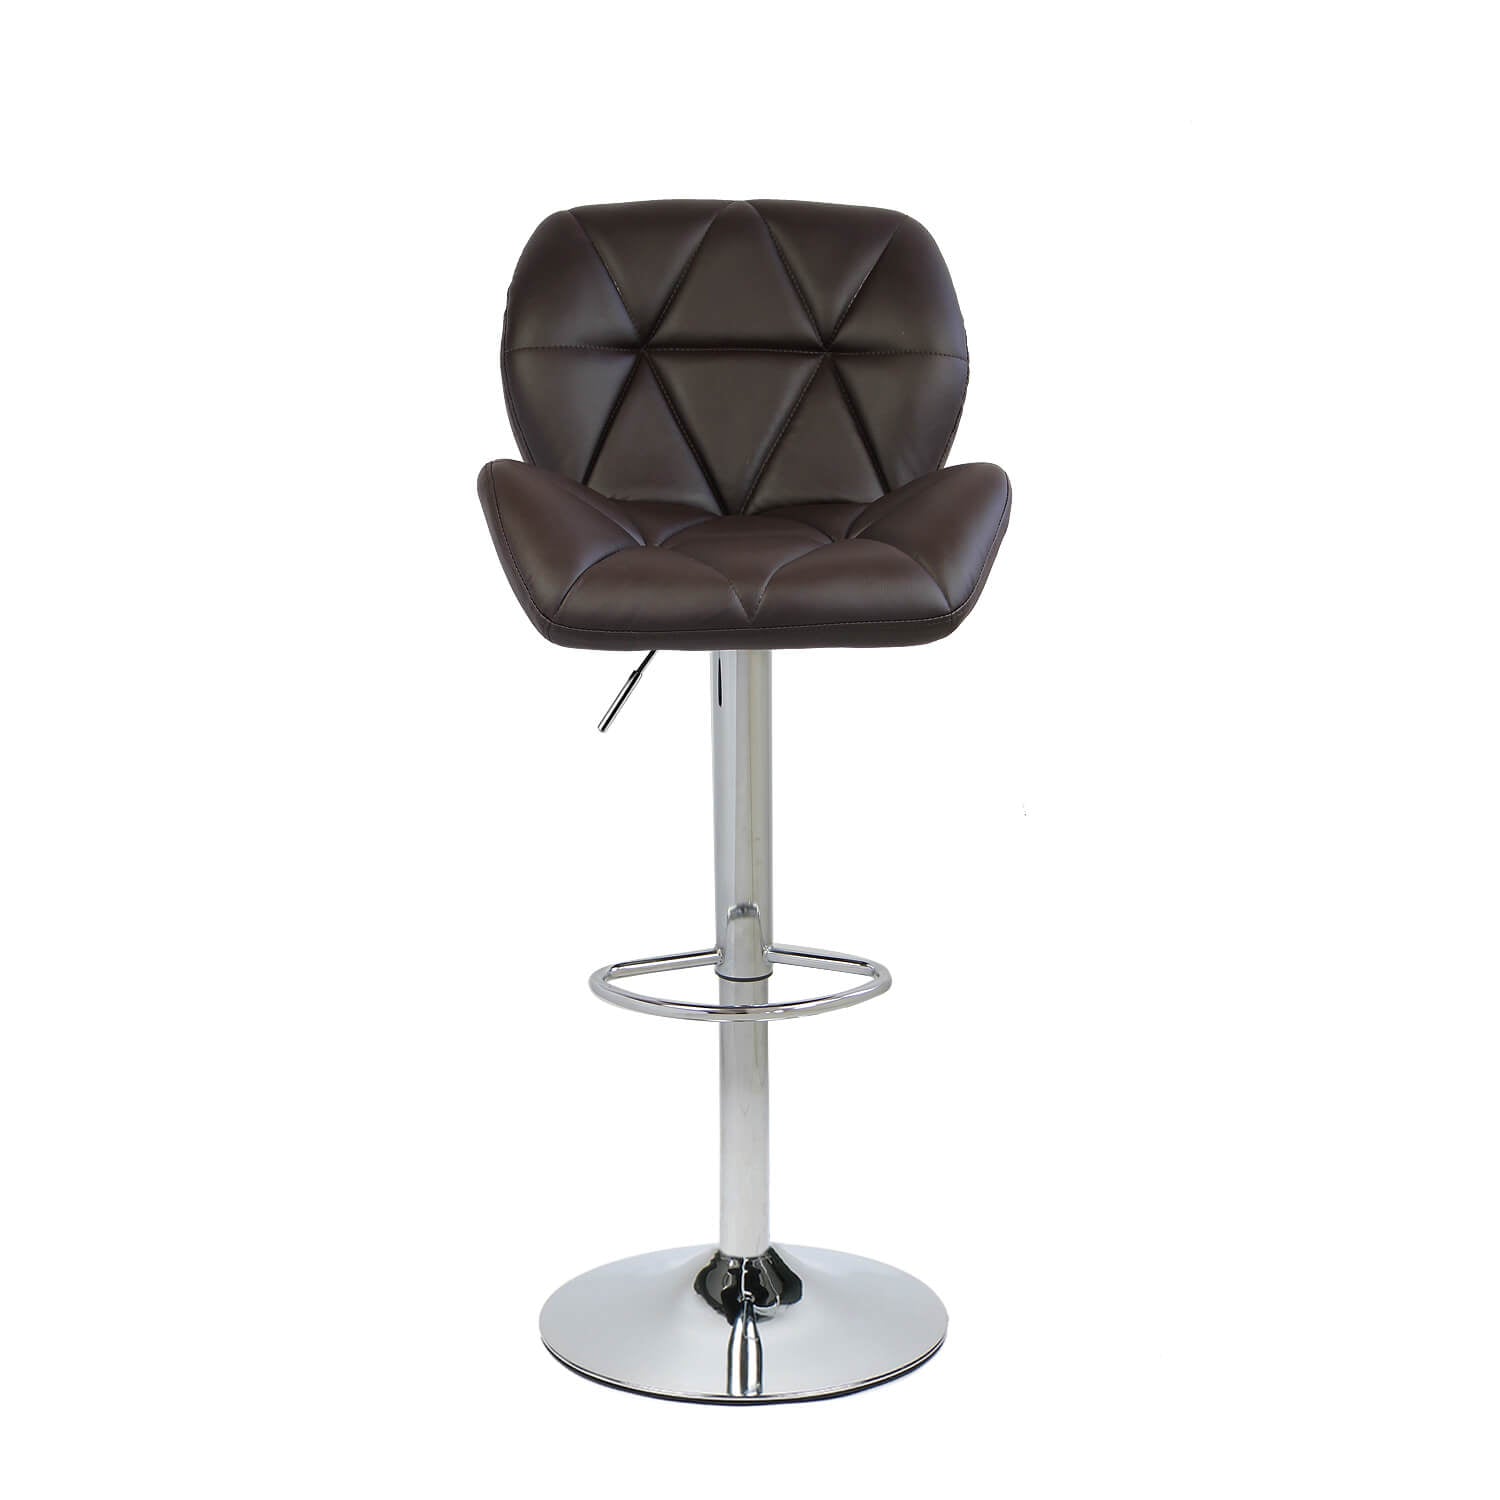 Elecwish brown bar stool OW001